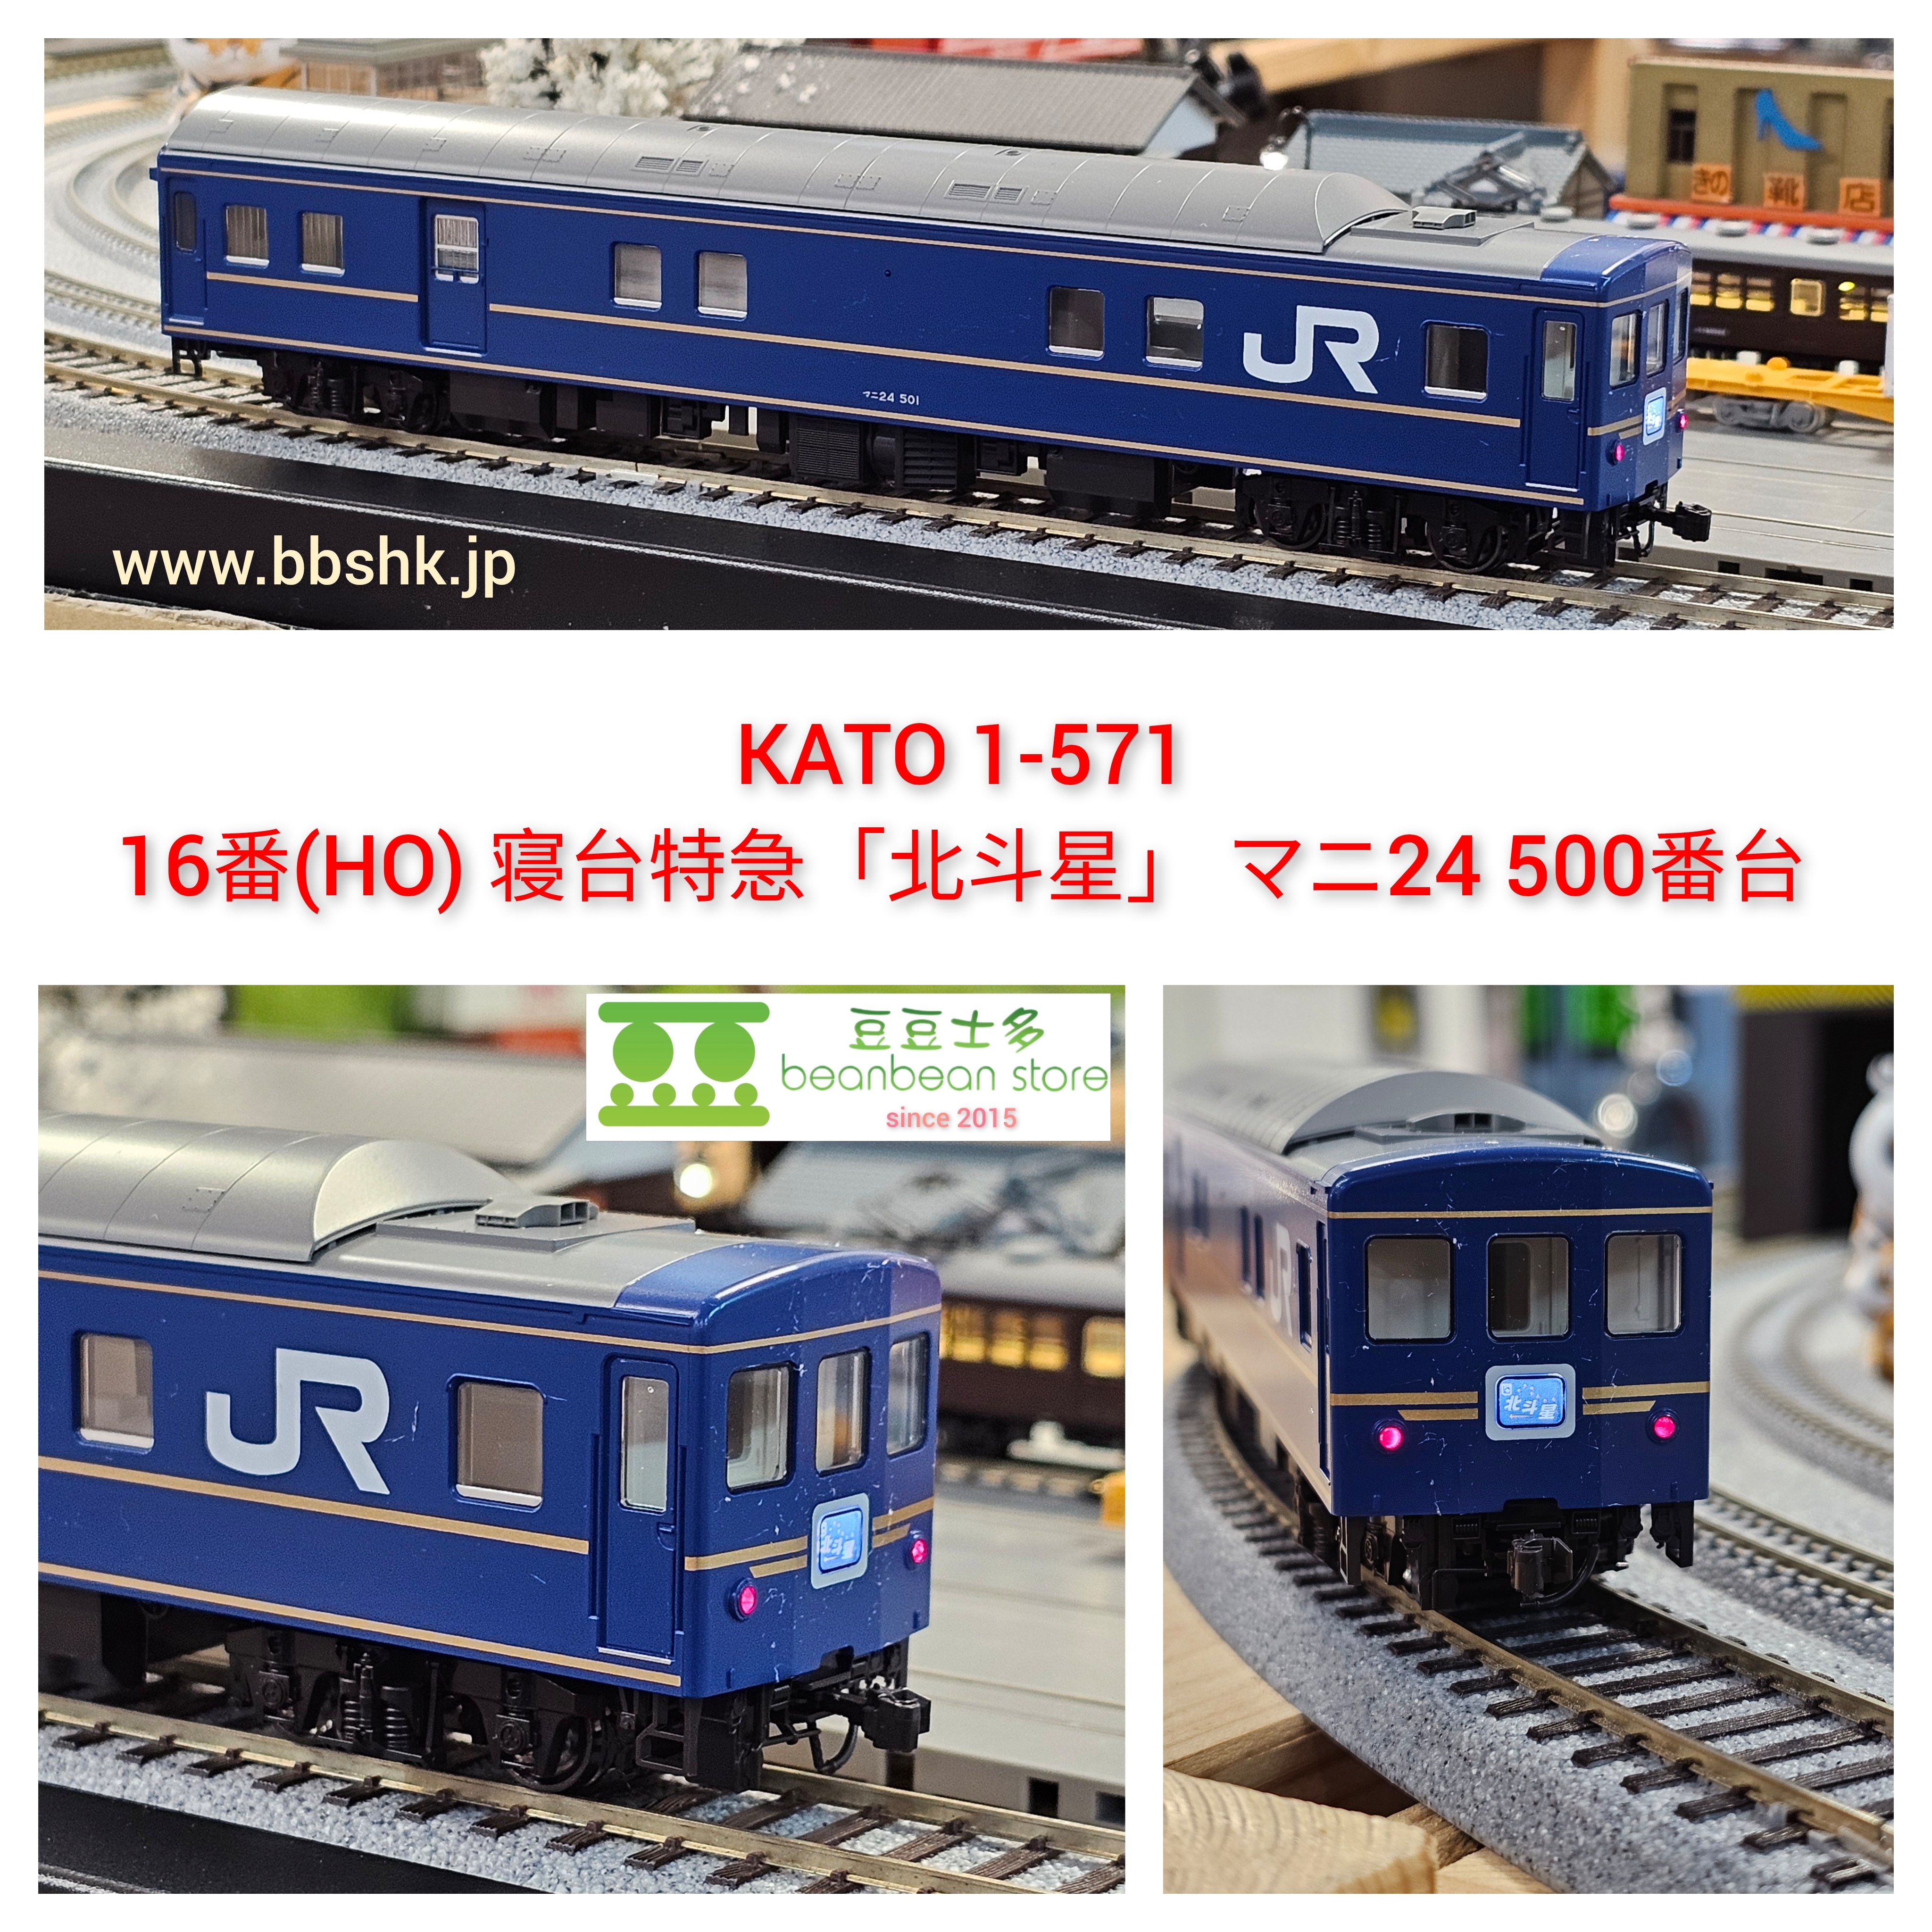 KATO 1-571 16番(HO) 寝台特急「北斗星」 マニ24 500番台